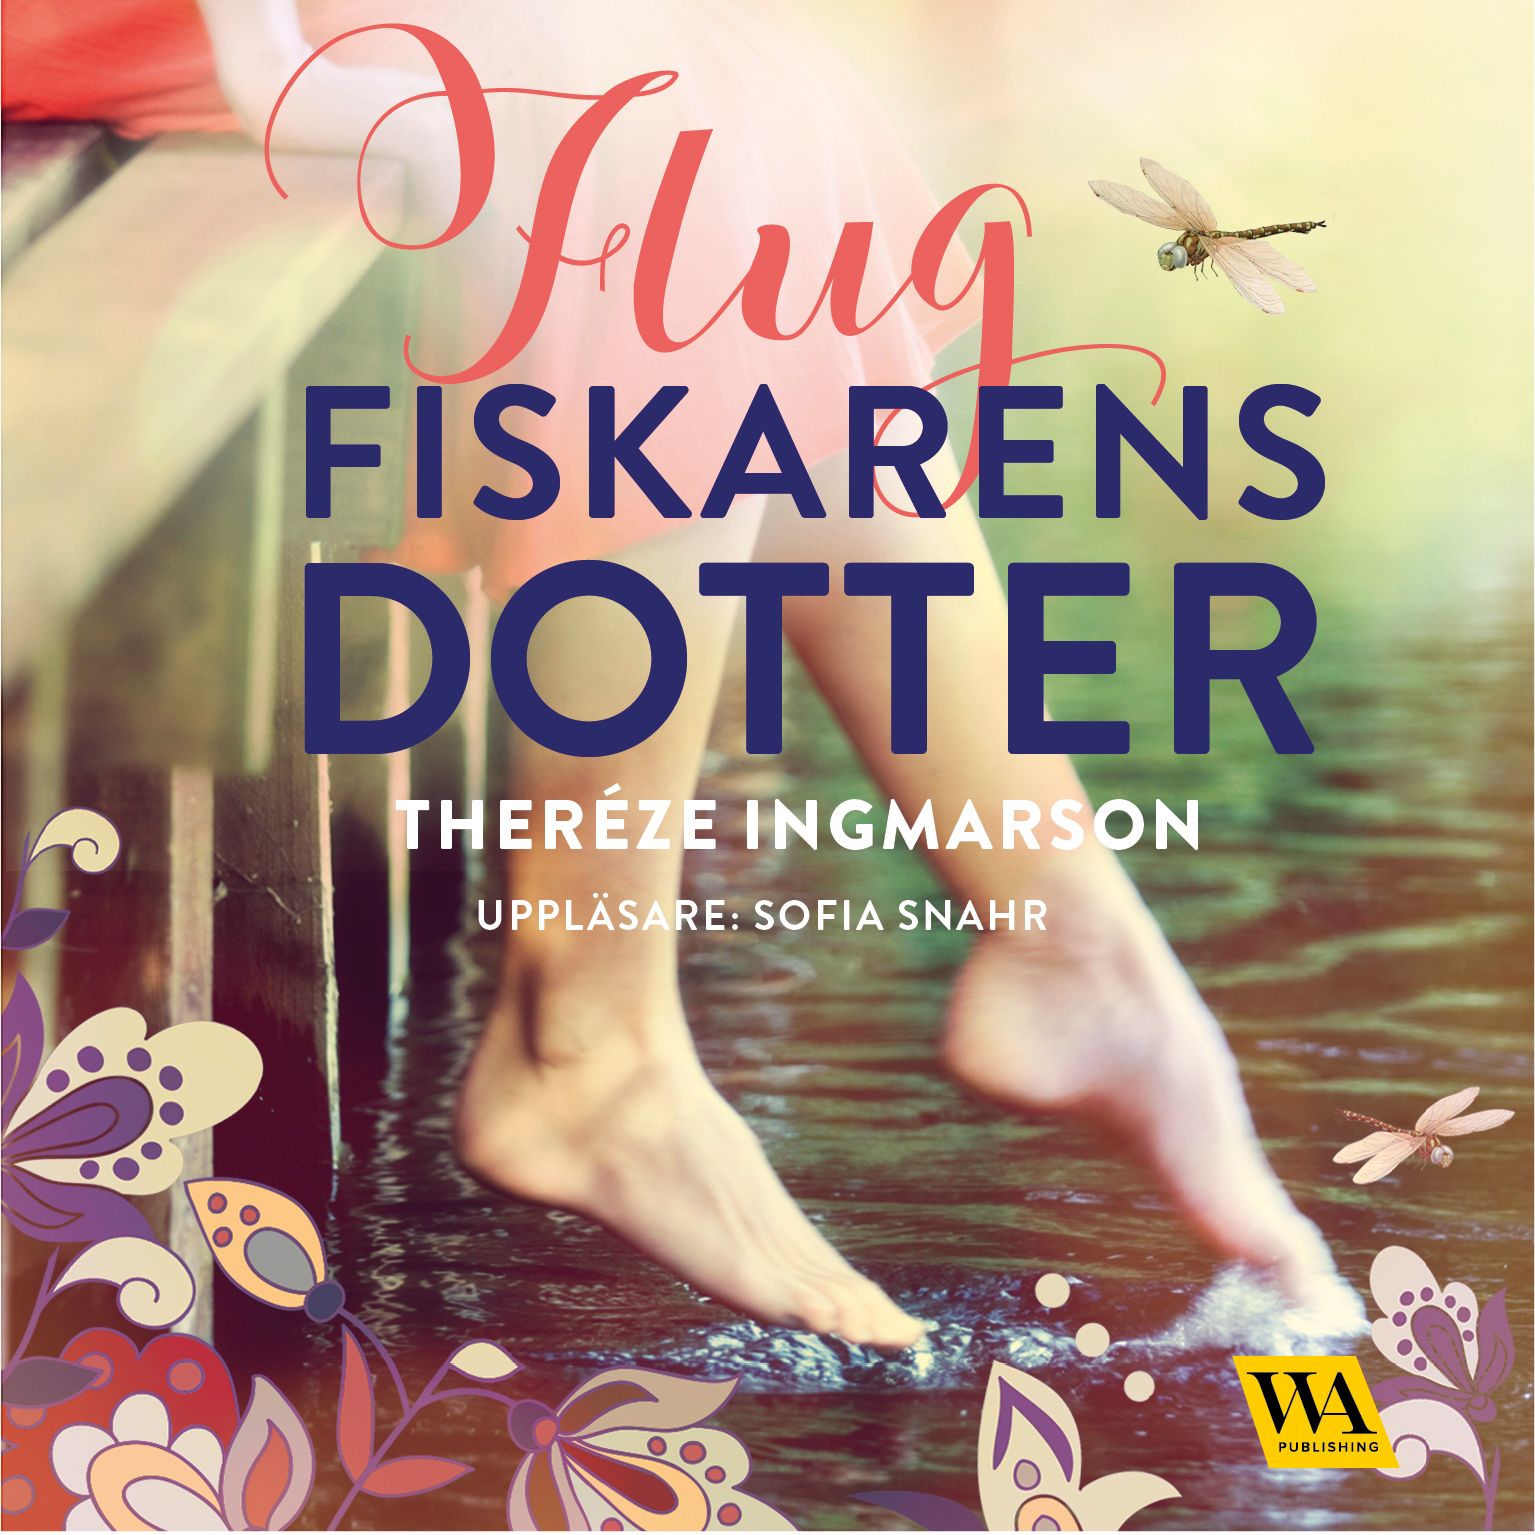 Flugfiskarens dotter, ljudbok av Theréze Ingmarsson